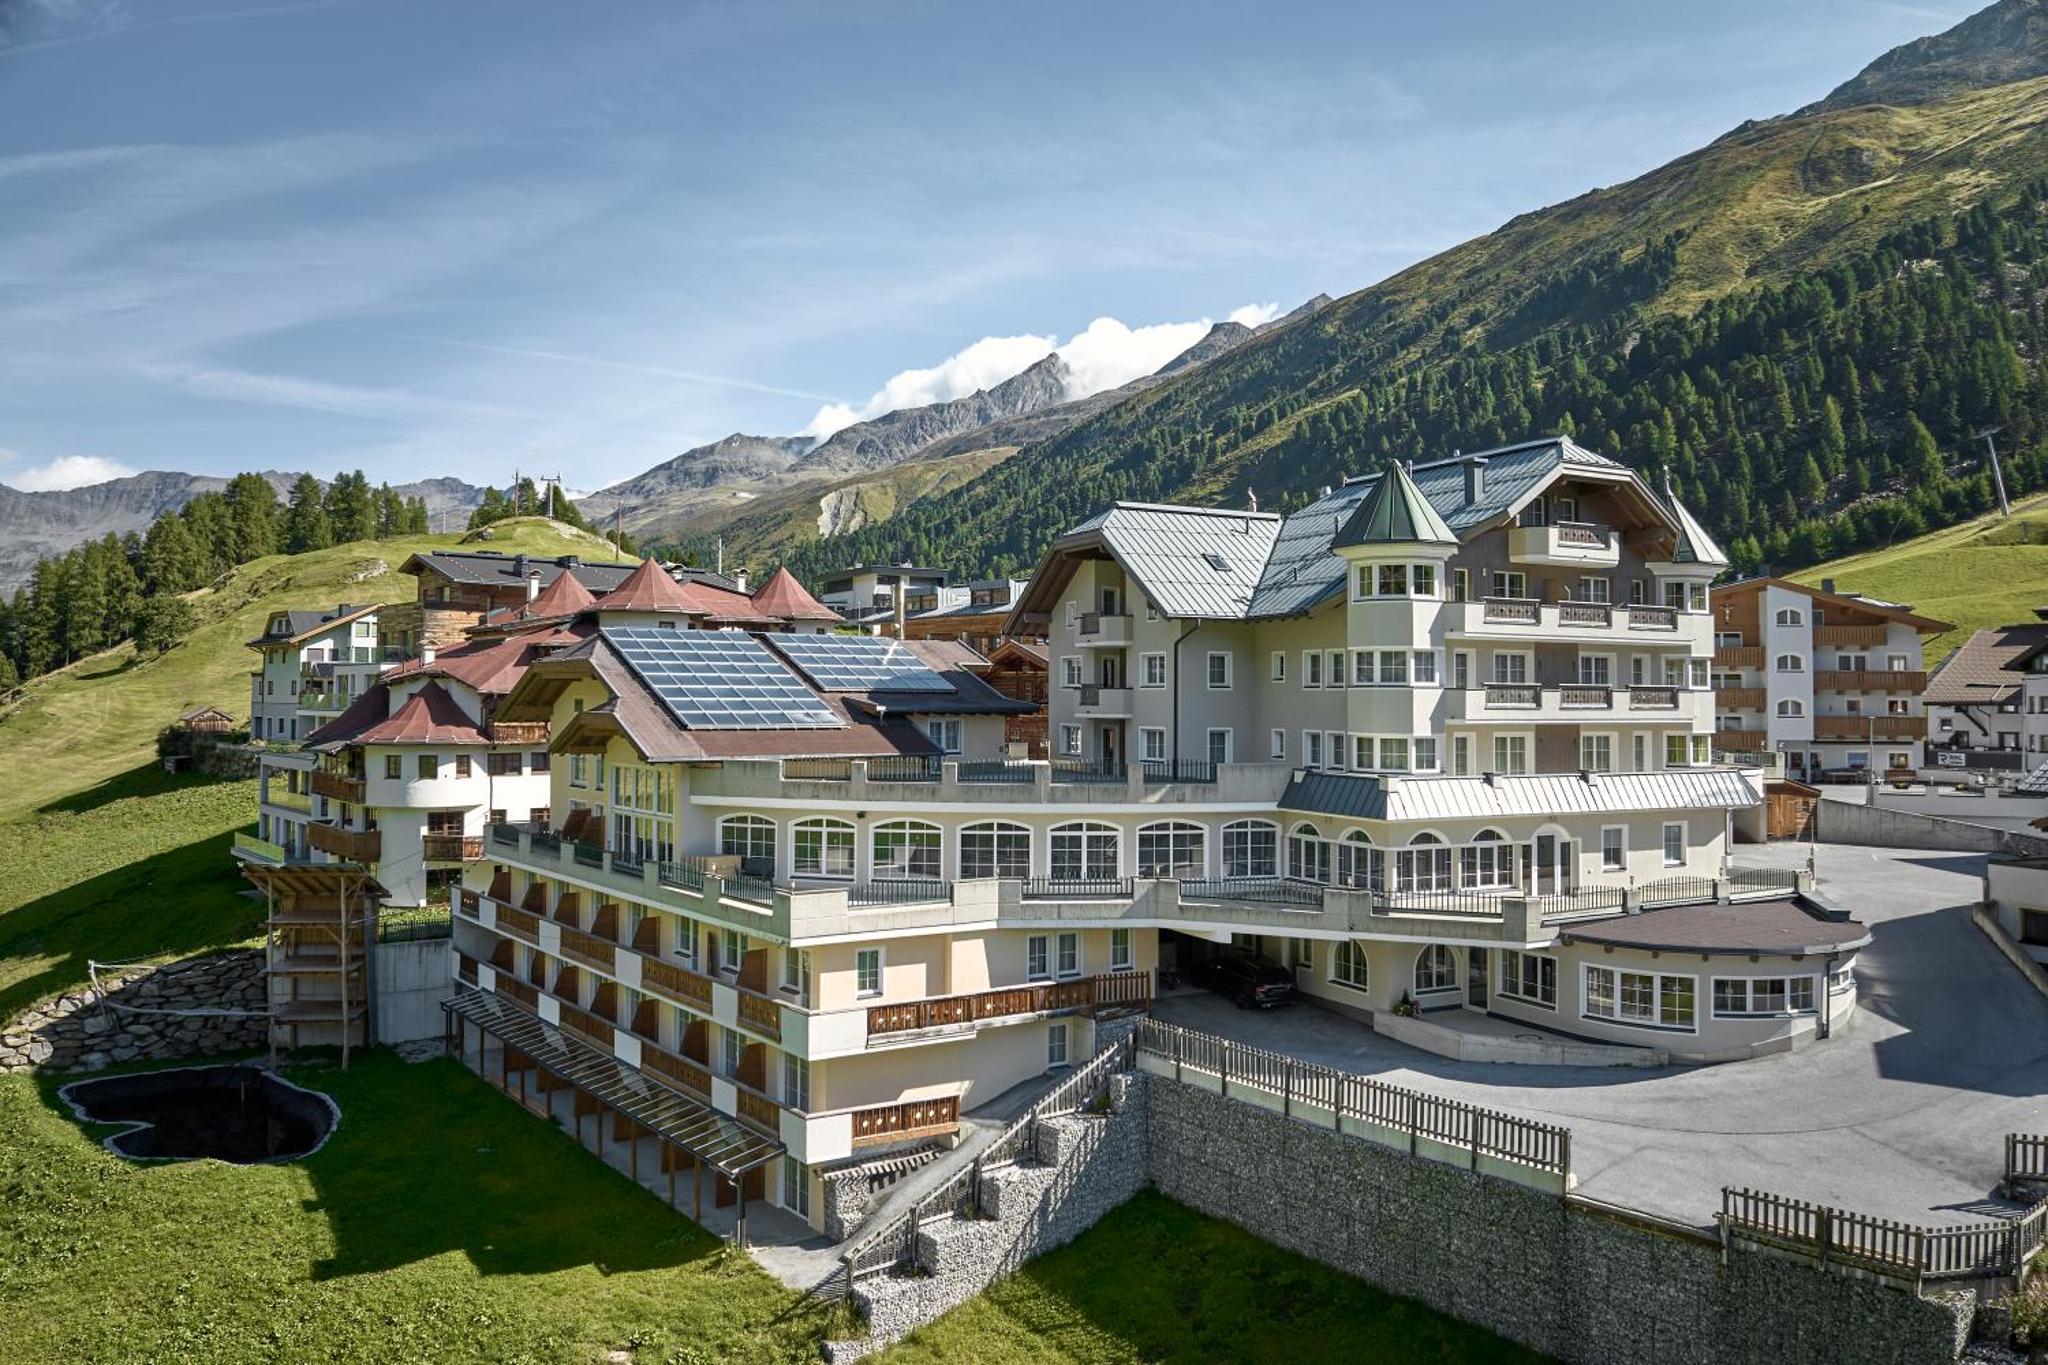 Hotel Alpenaussicht